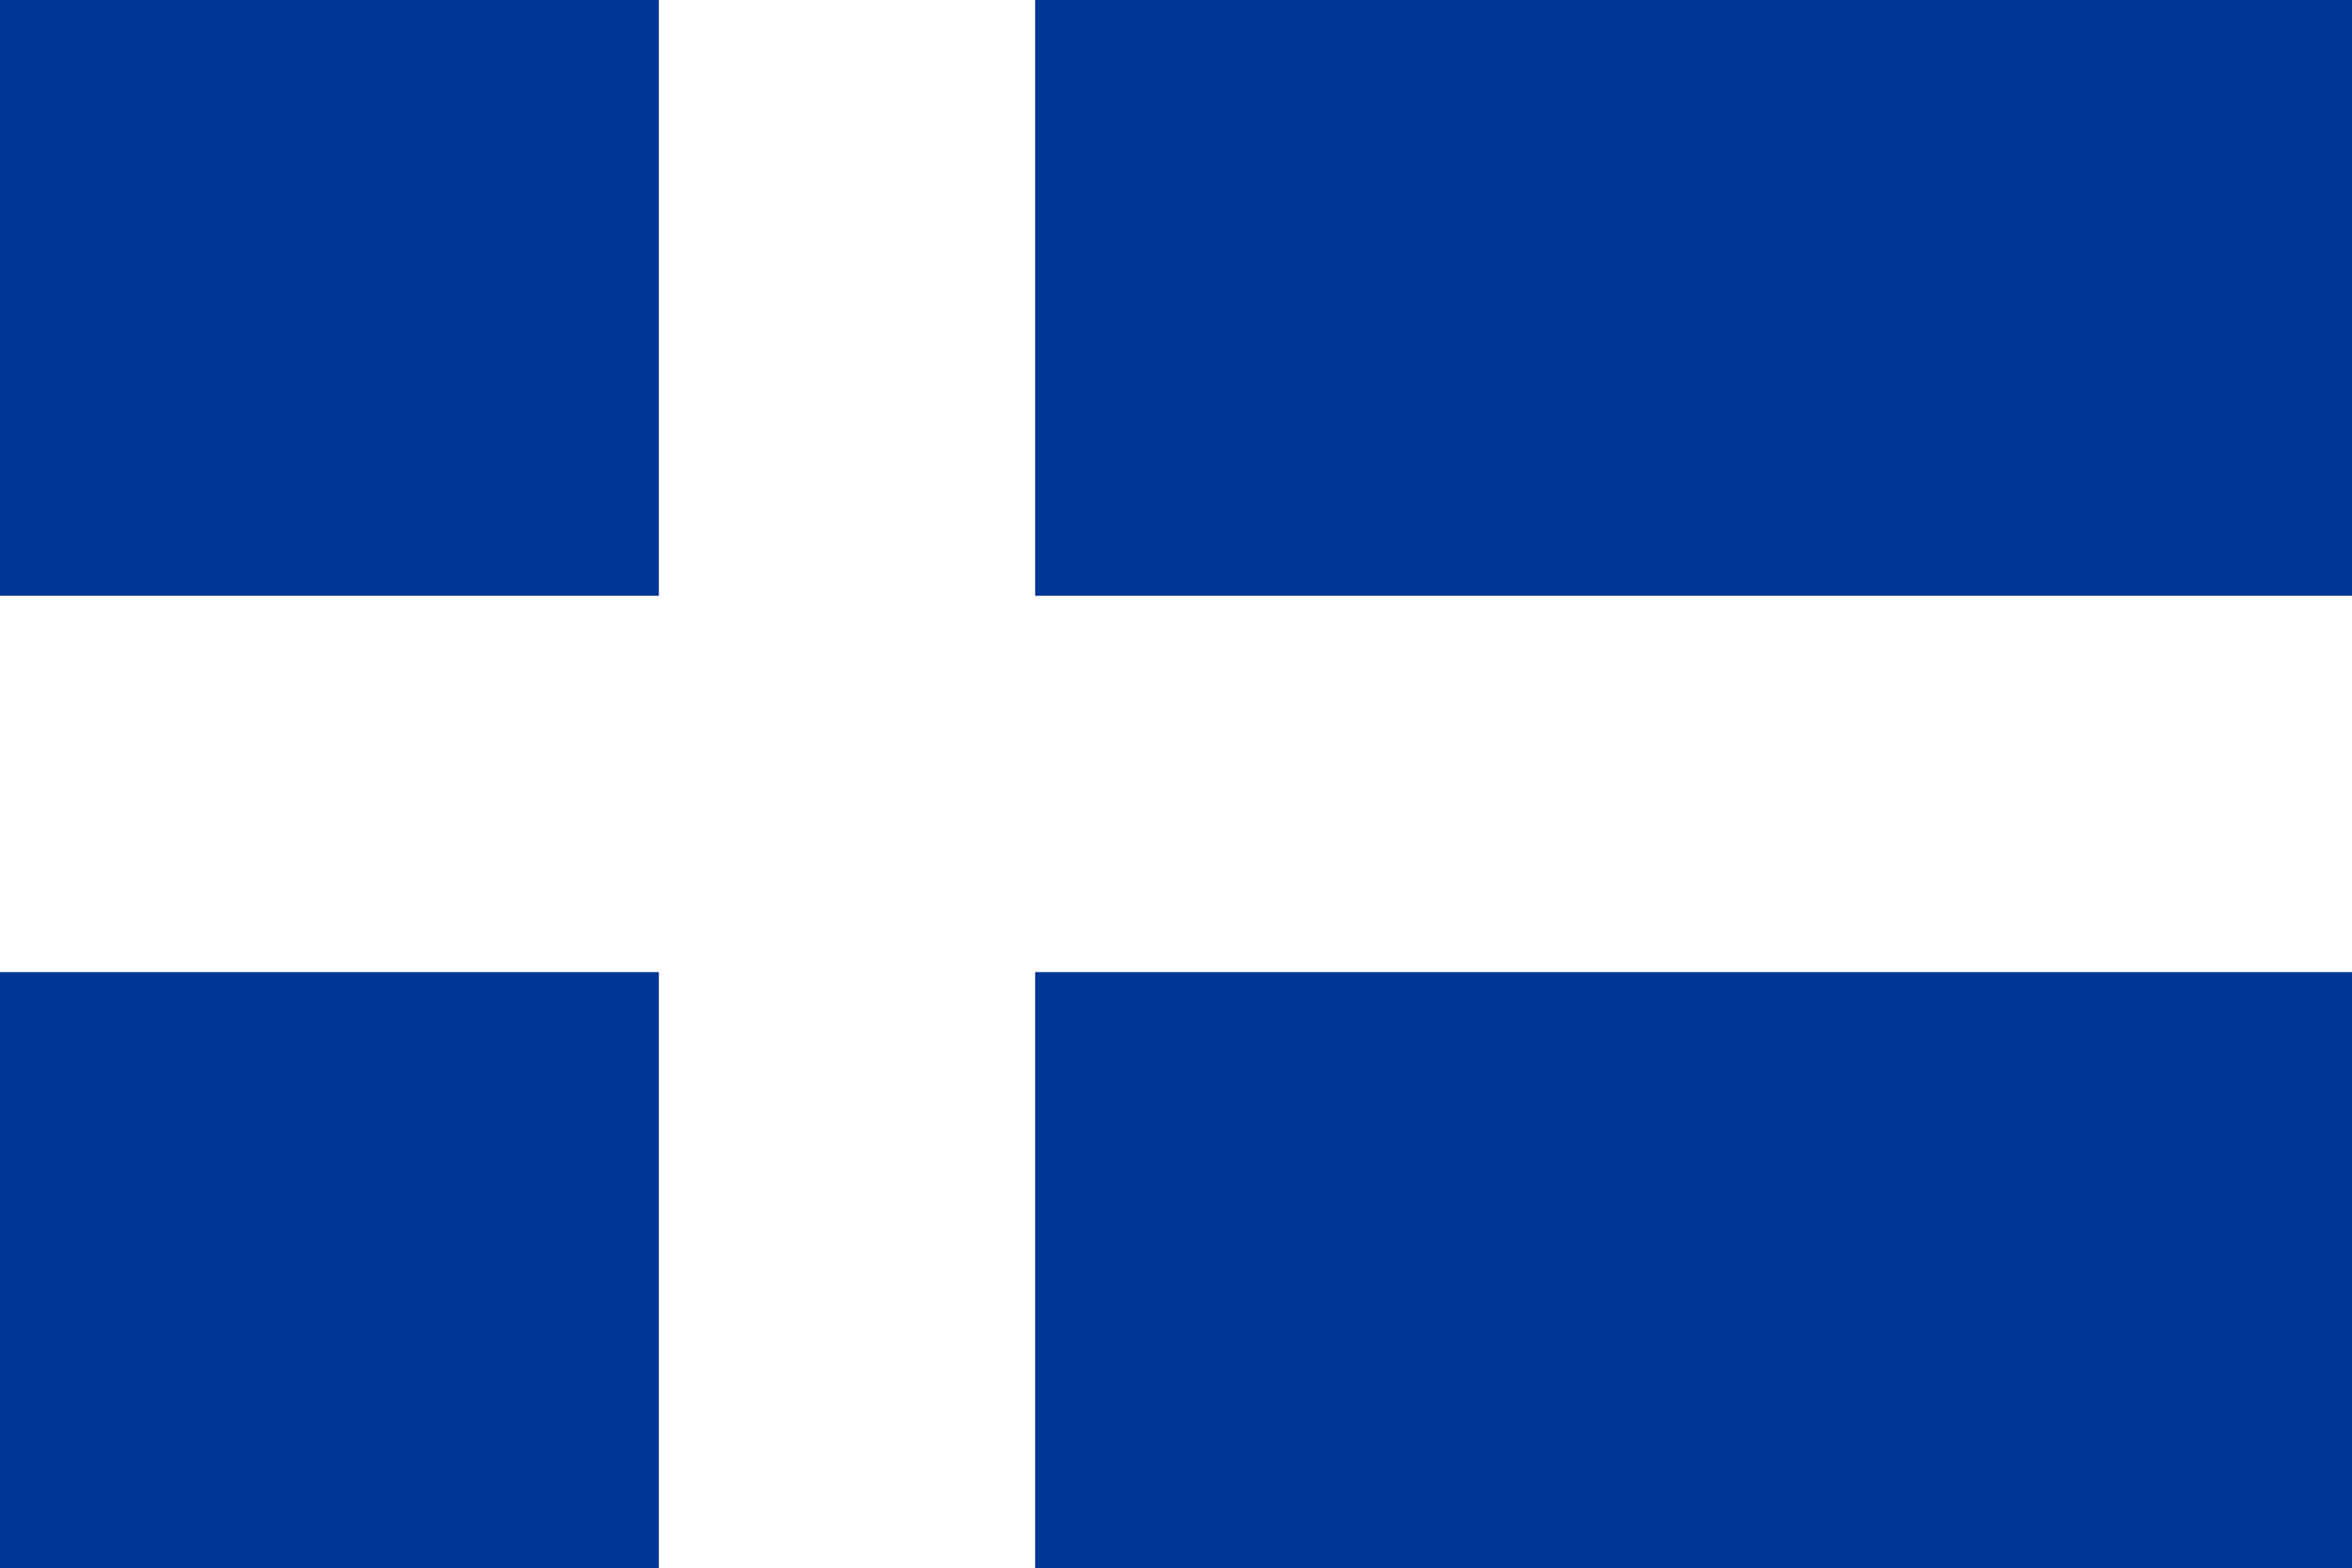 1897, the Hvítbláinn Iceland Flag